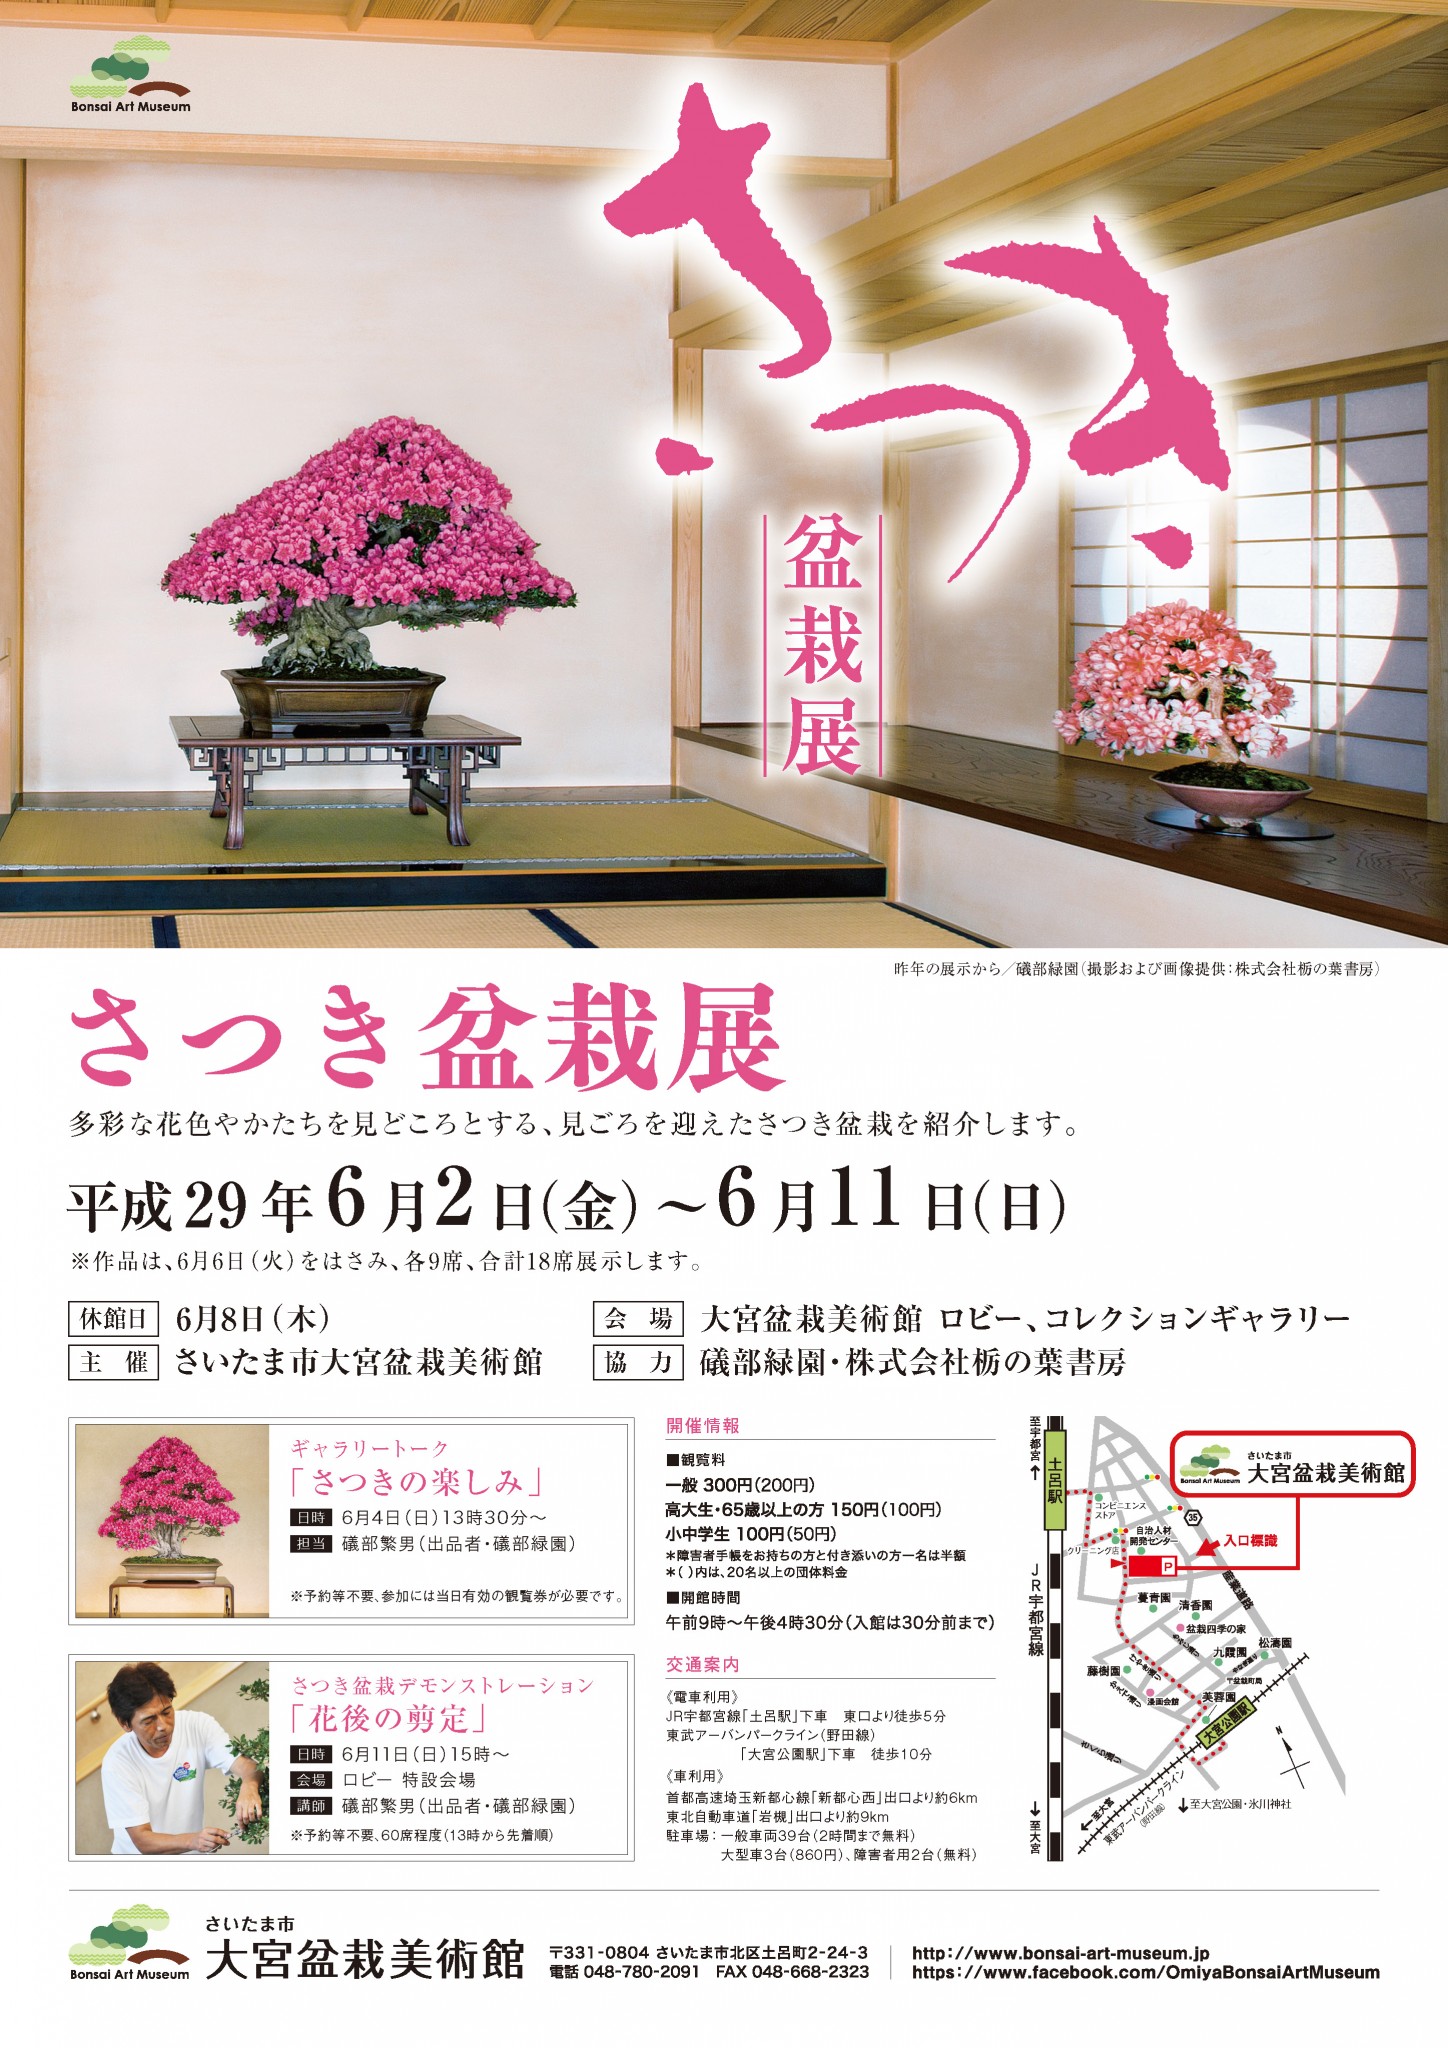 Satsuki (Azalea) Exhibition